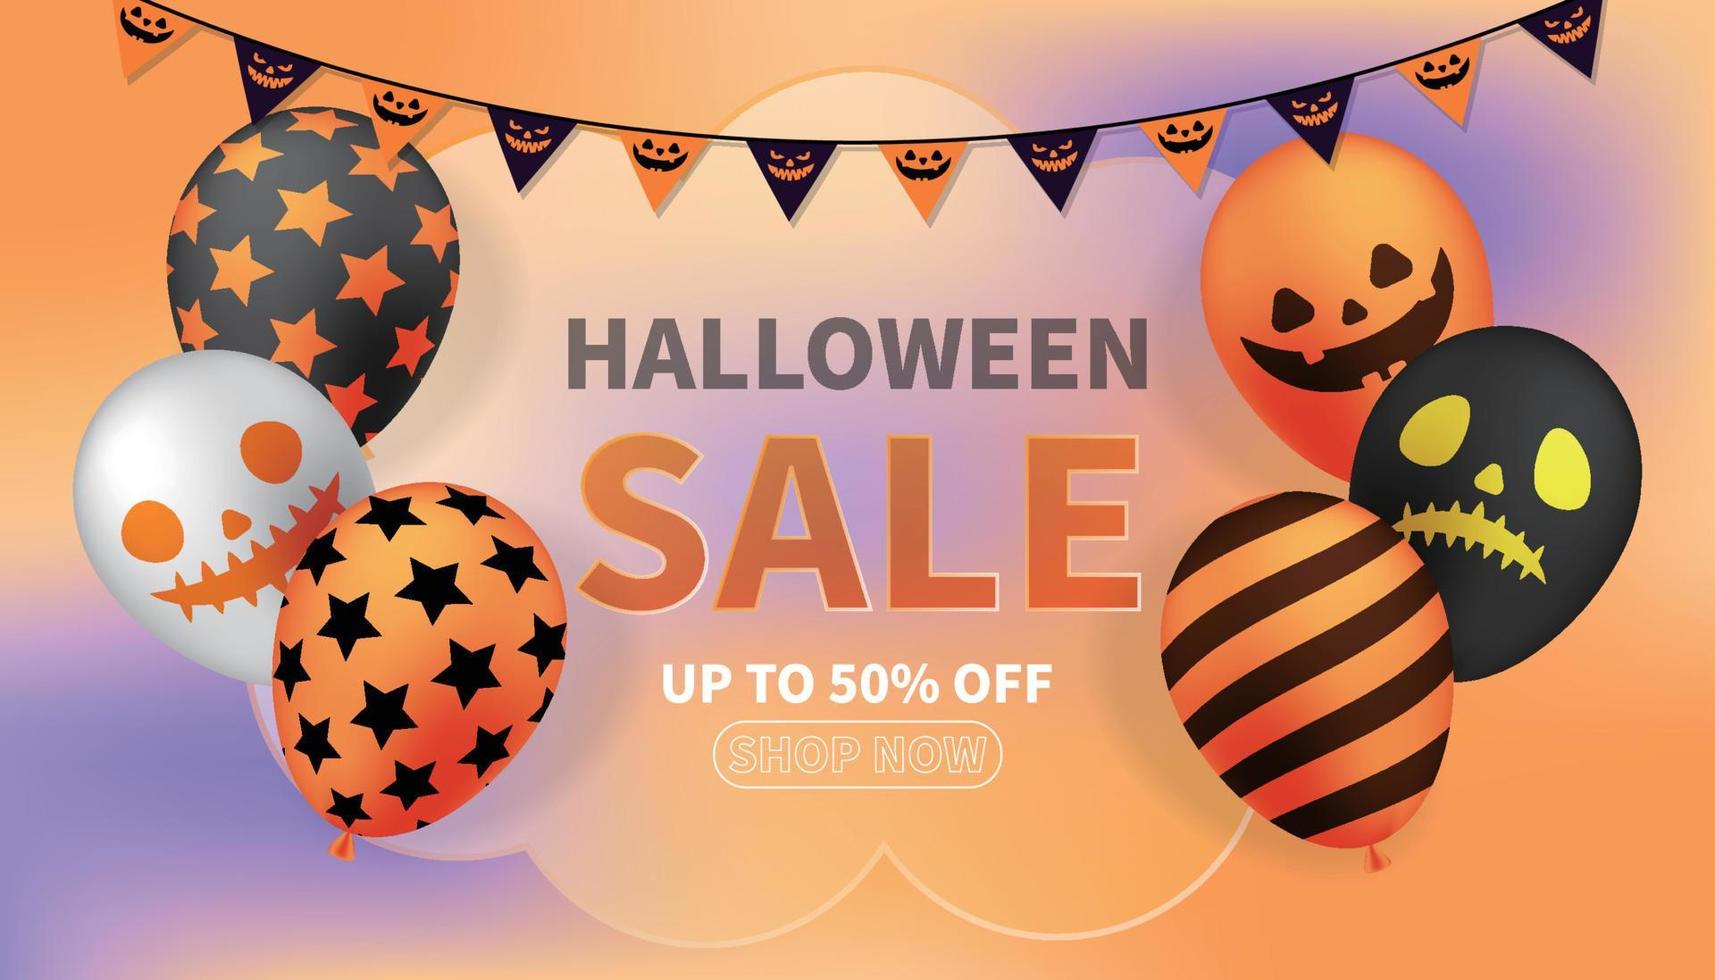 fundo de venda de halloween com balões de careta e fotos festivas vetor